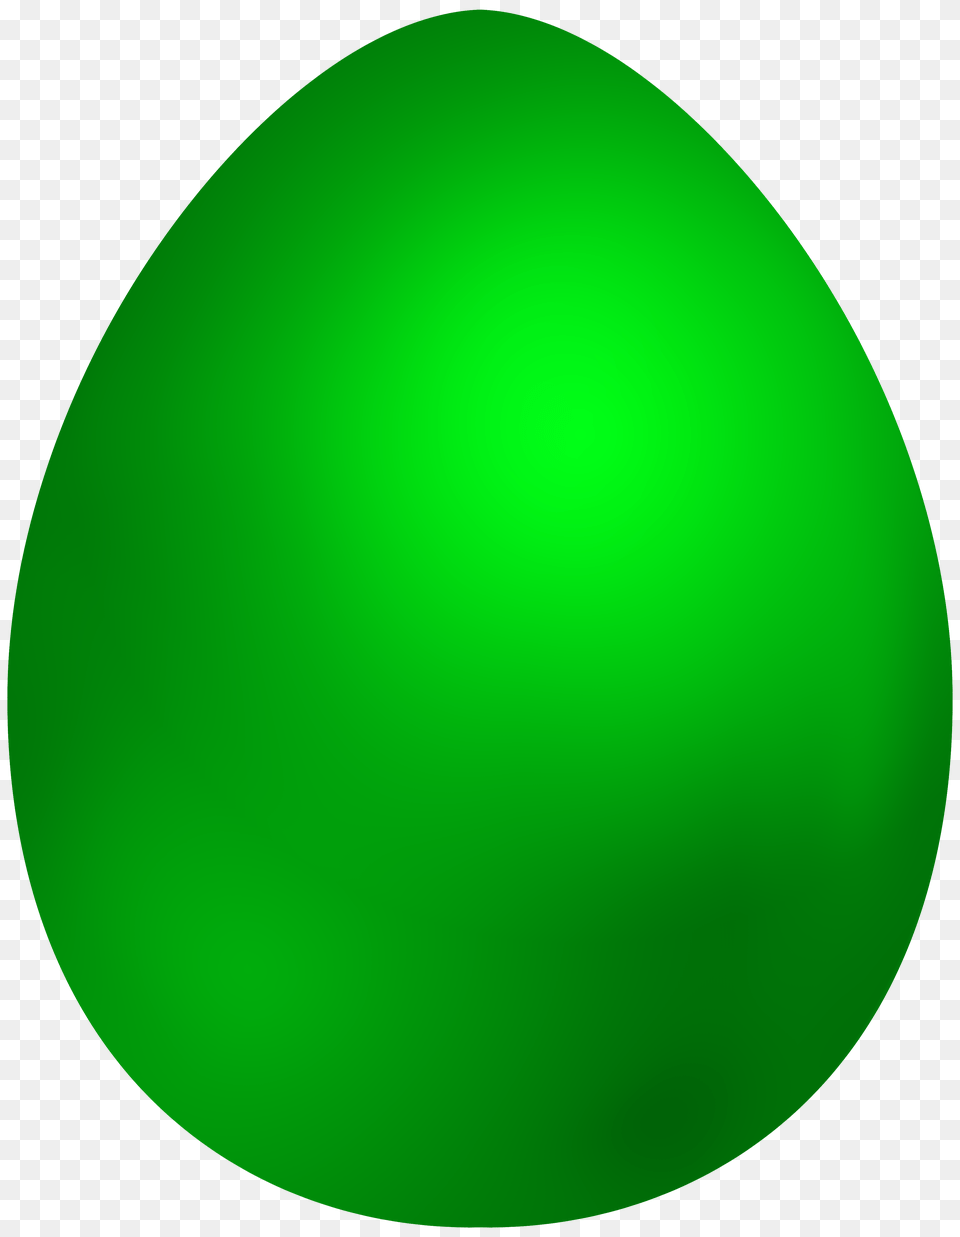 Green Easter Egg Clip Art, Food, Clothing, Hardhat, Helmet Free Transparent Png